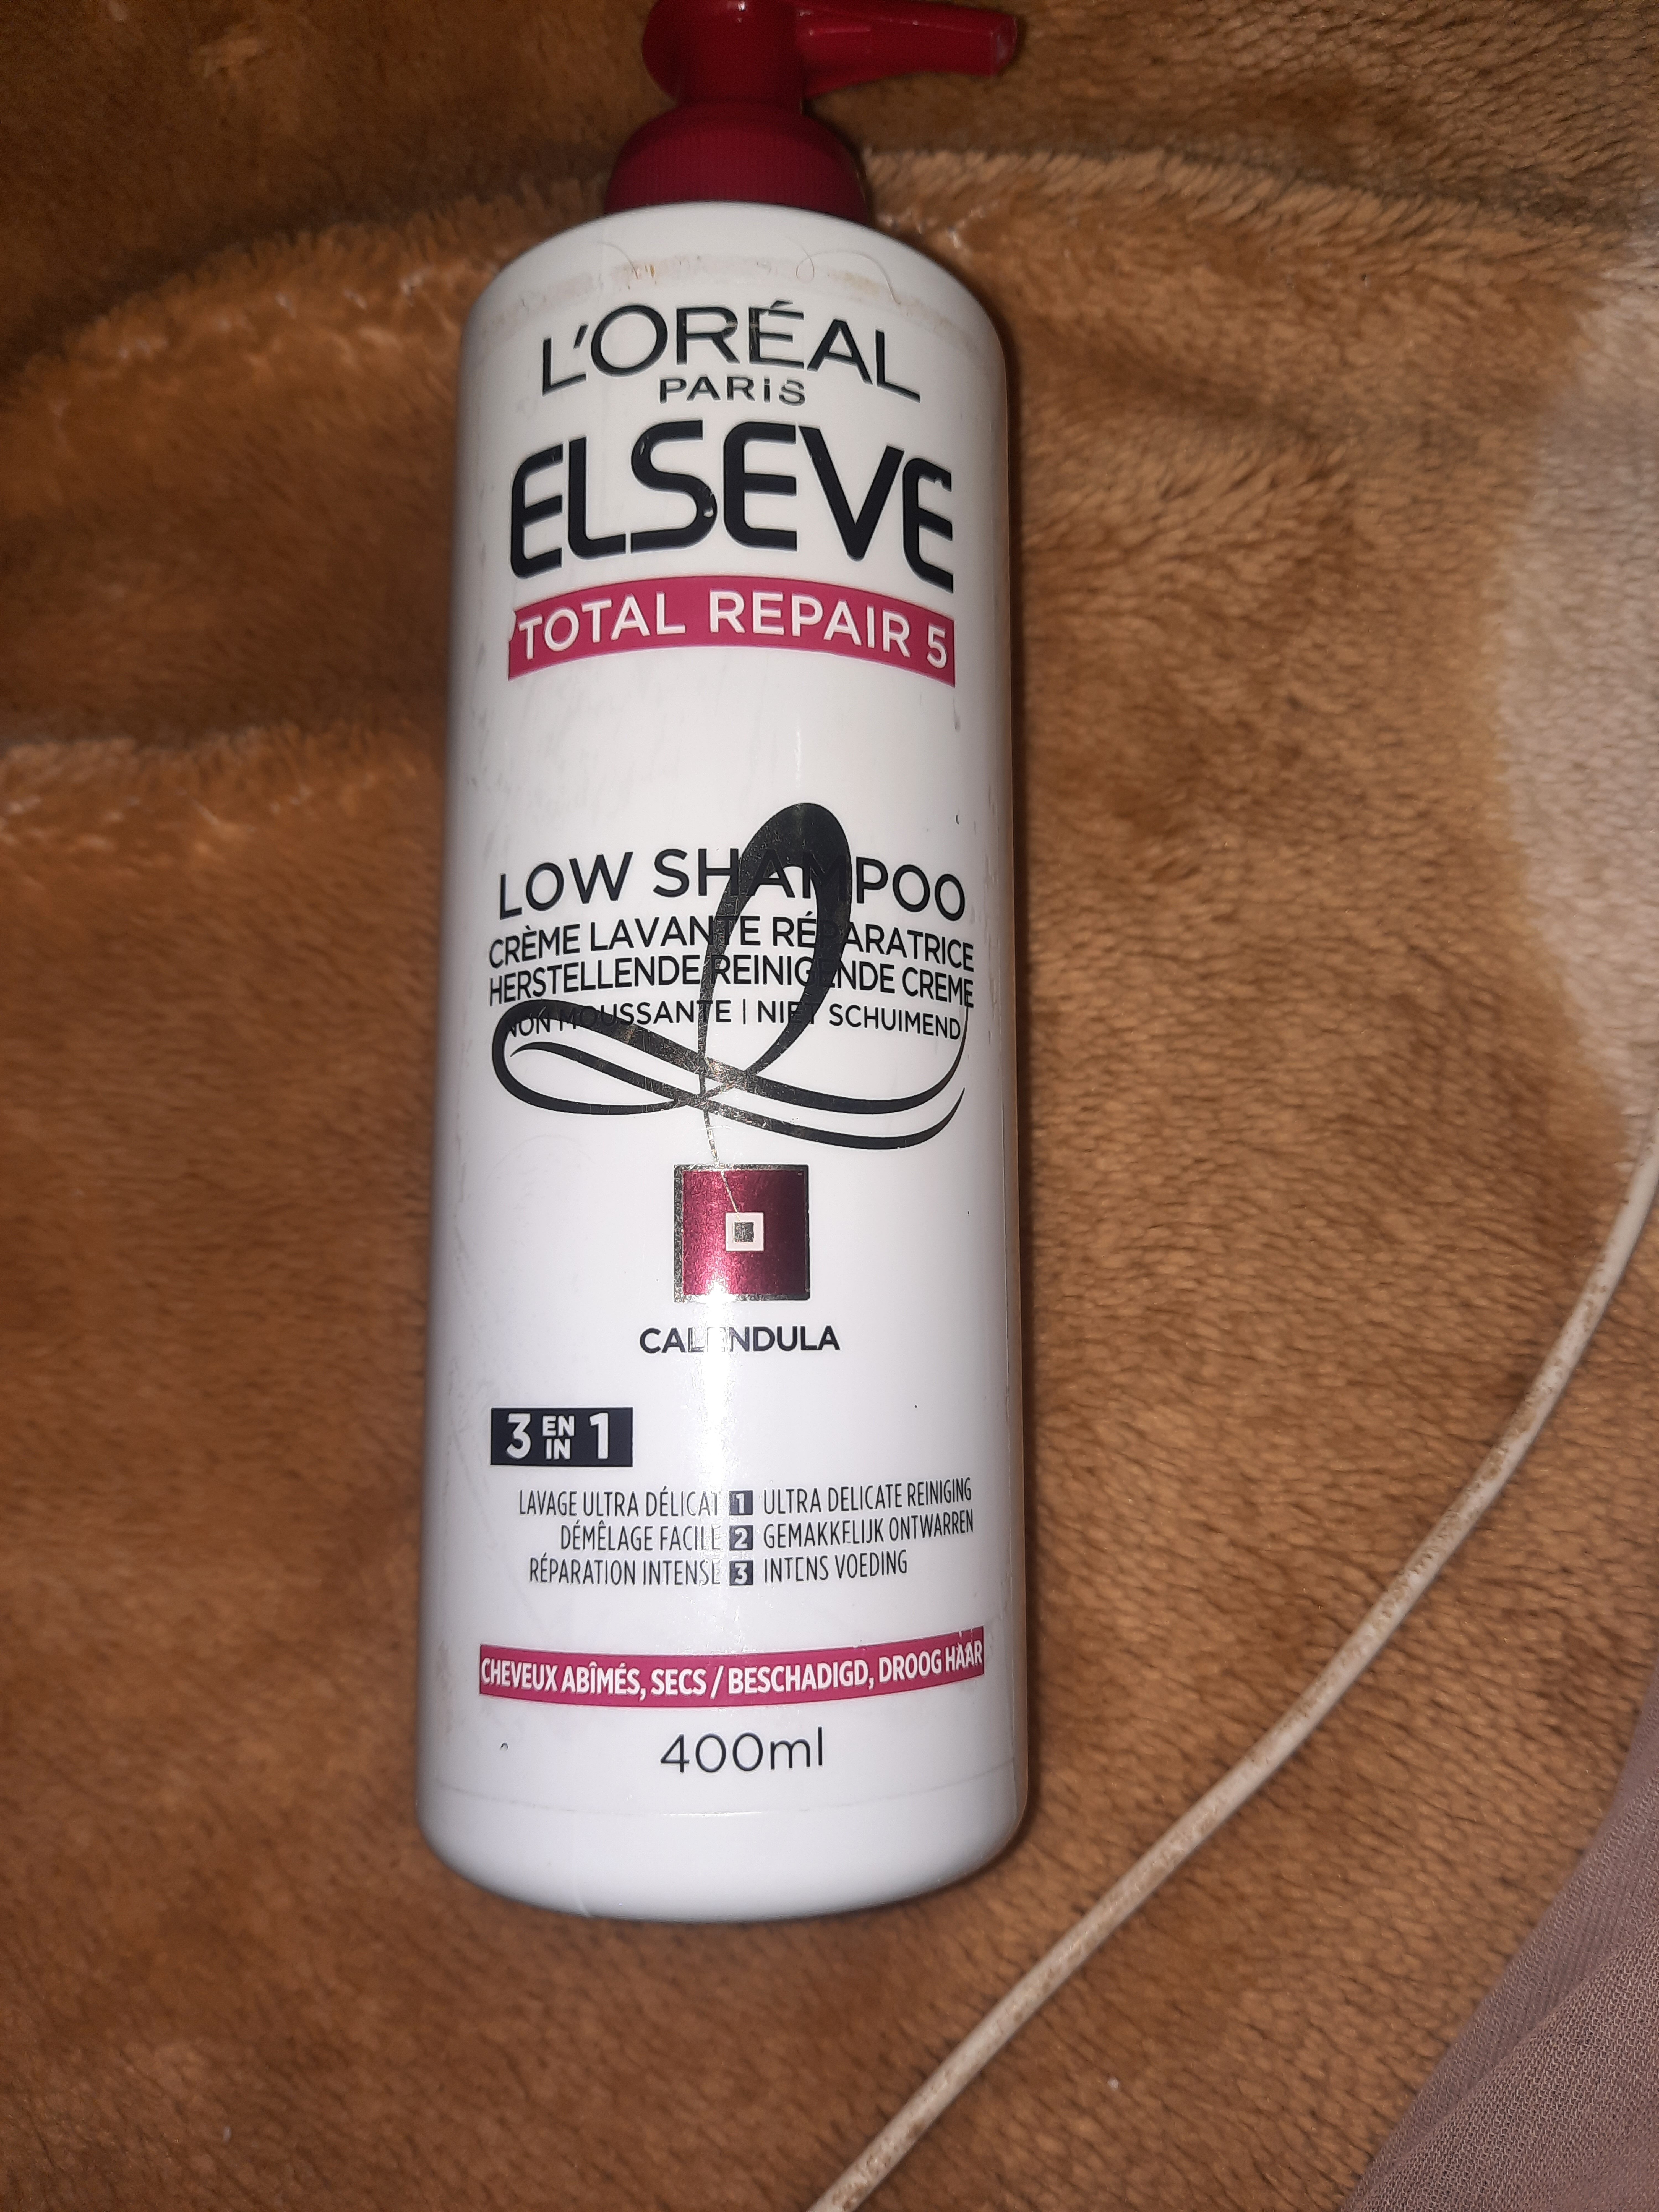 total repair 5 low shampoo - Product - en